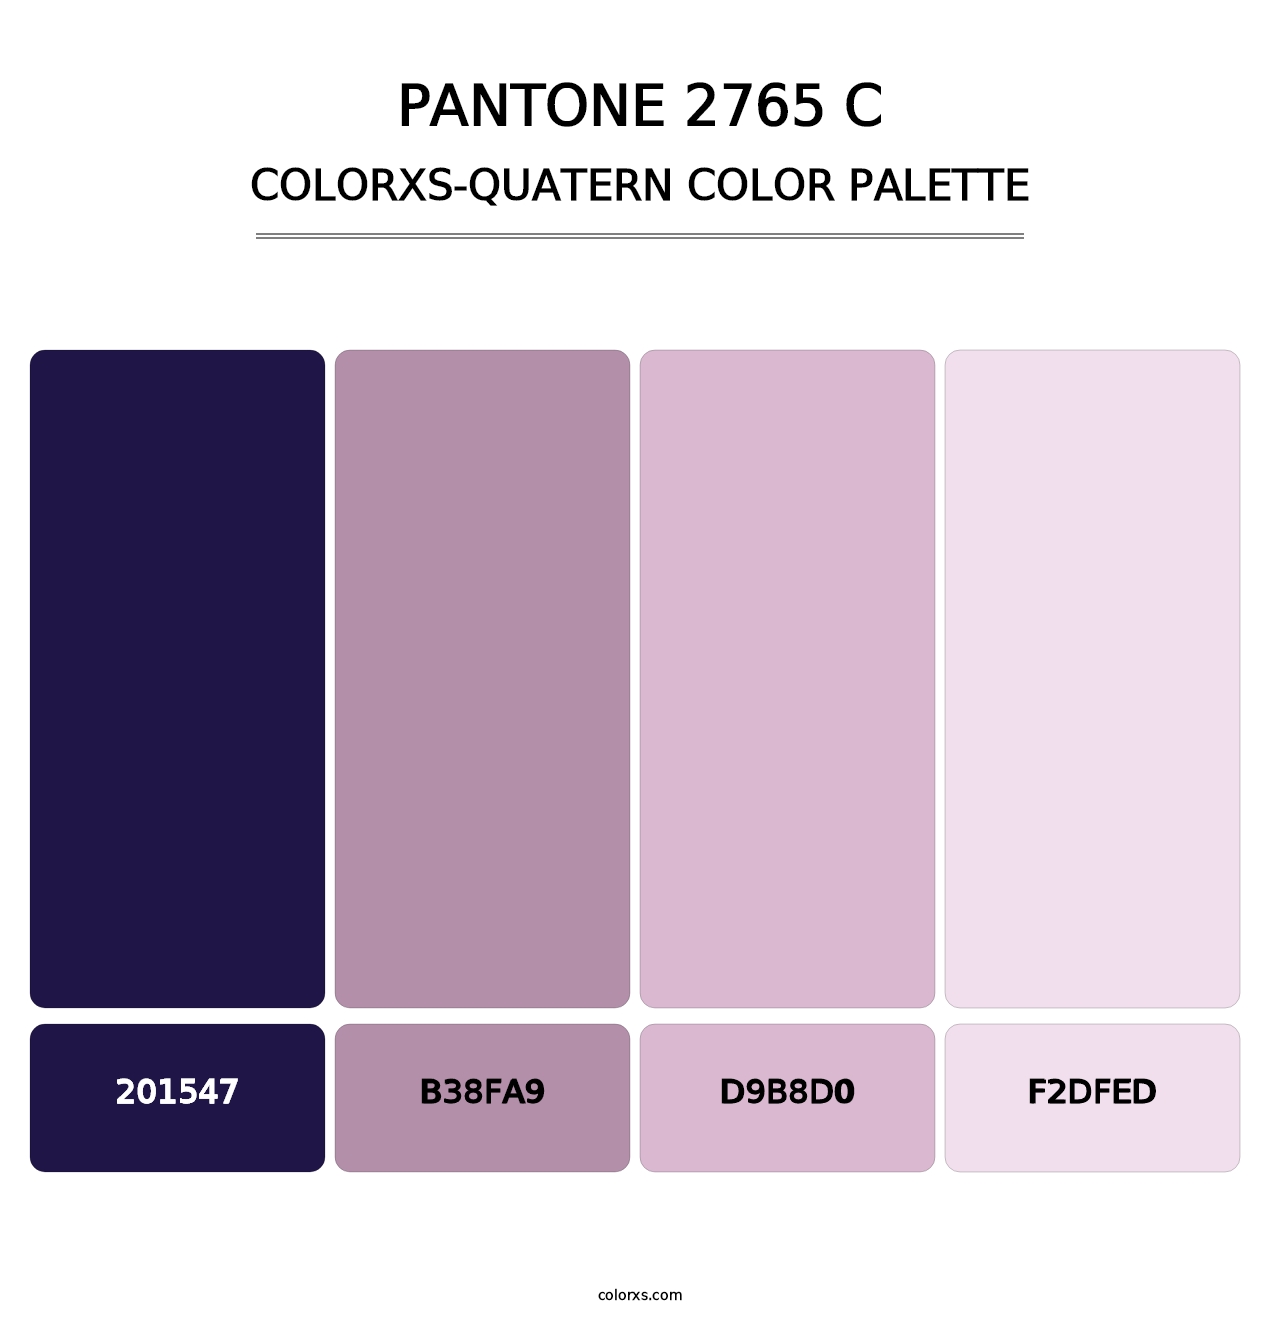 PANTONE 2765 C - Colorxs Quatern Palette